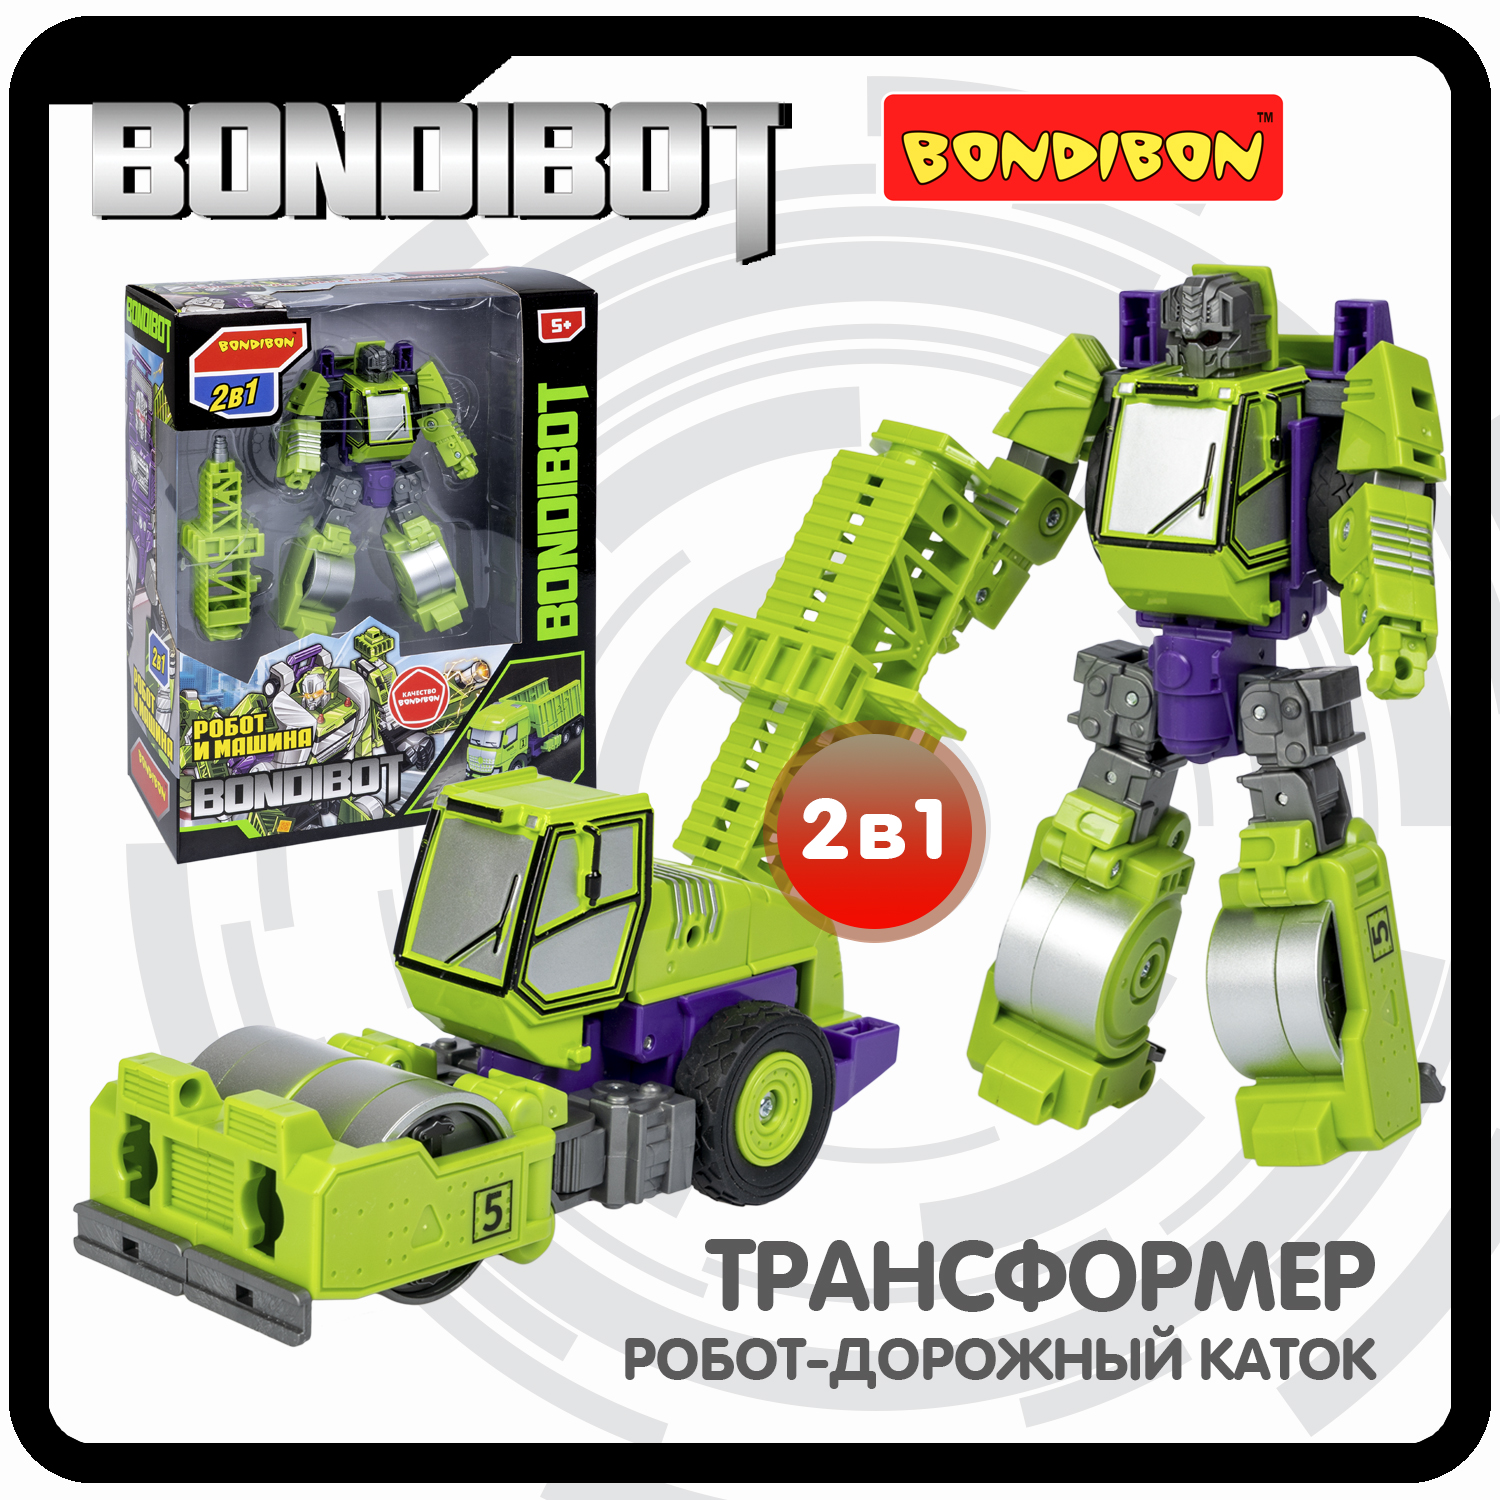 Трансформер 2в1 BONDIBOT Bondibon робот-строит. техника дорожный каток 28,5x23x9,5 см ролик каток широкий es 0644